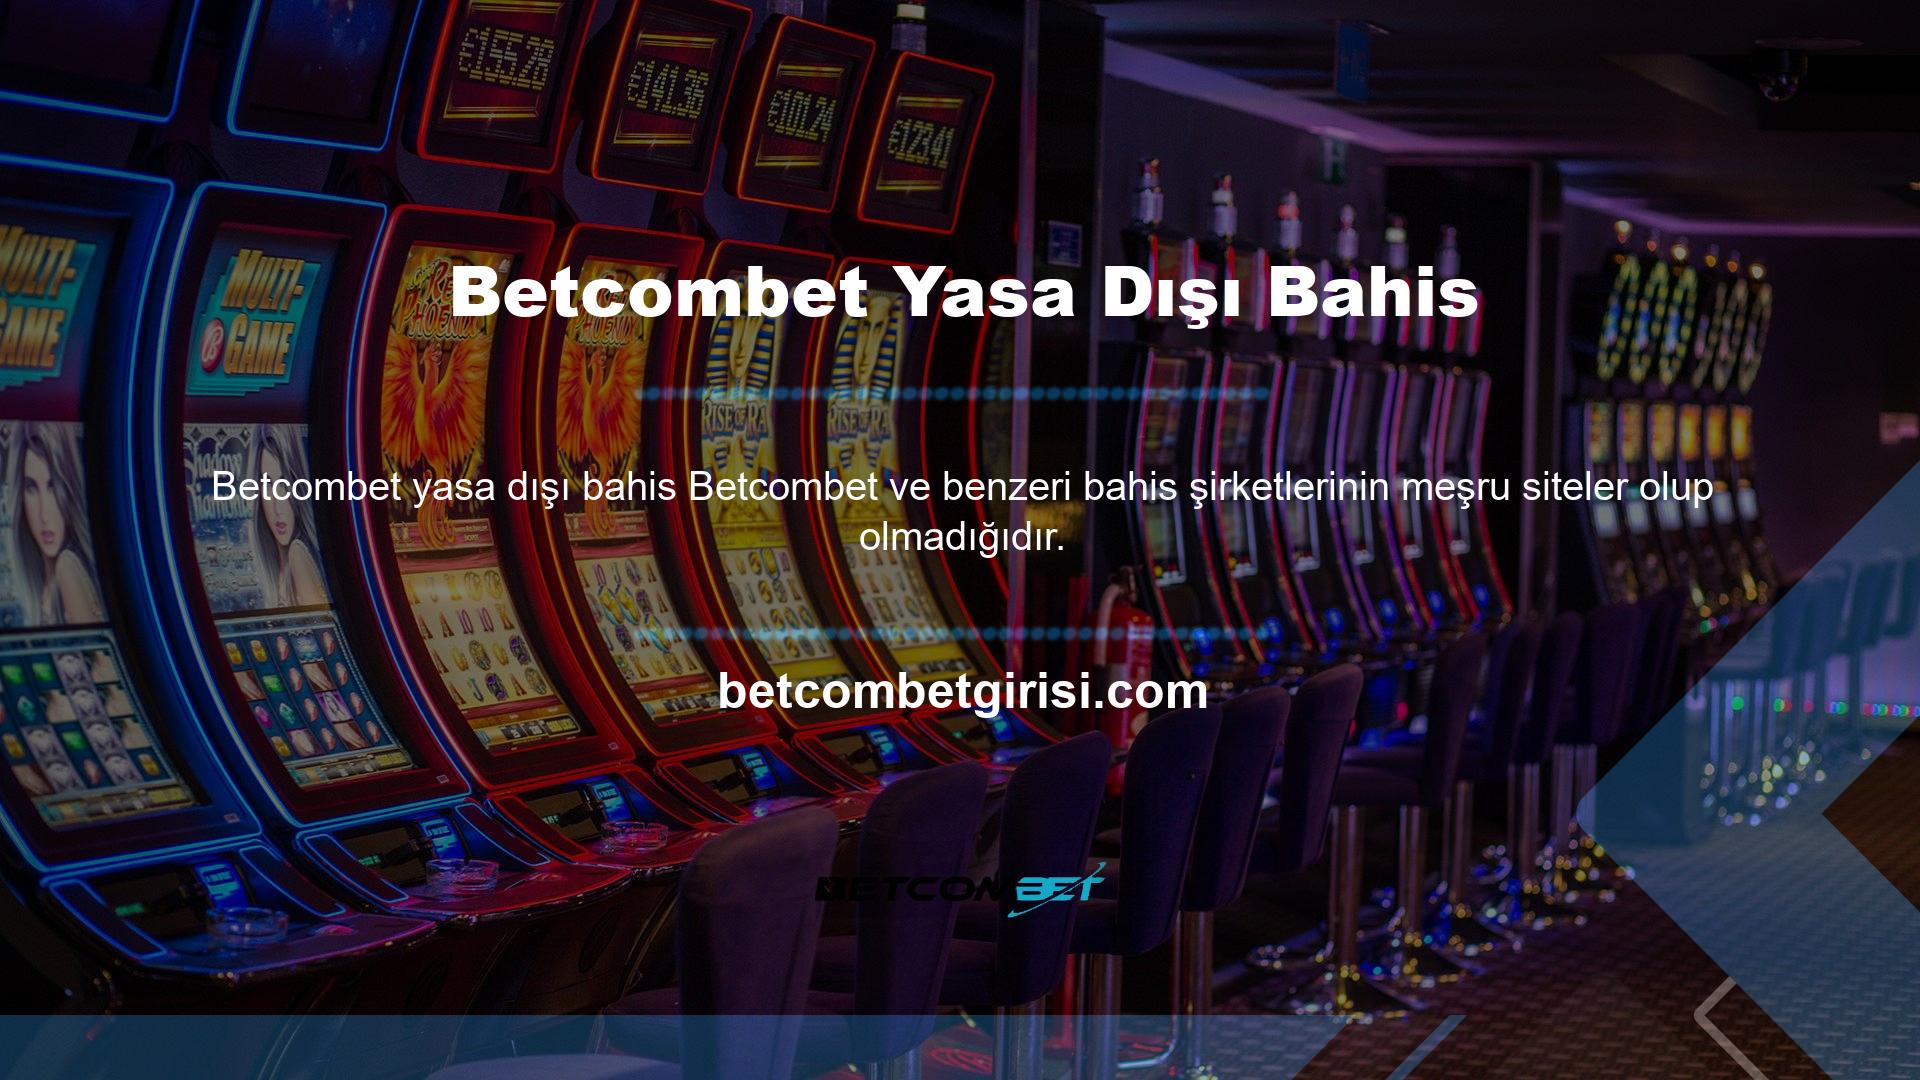 Değerli oyuncular, Betcombet yasa dışı bir casino sitesidir